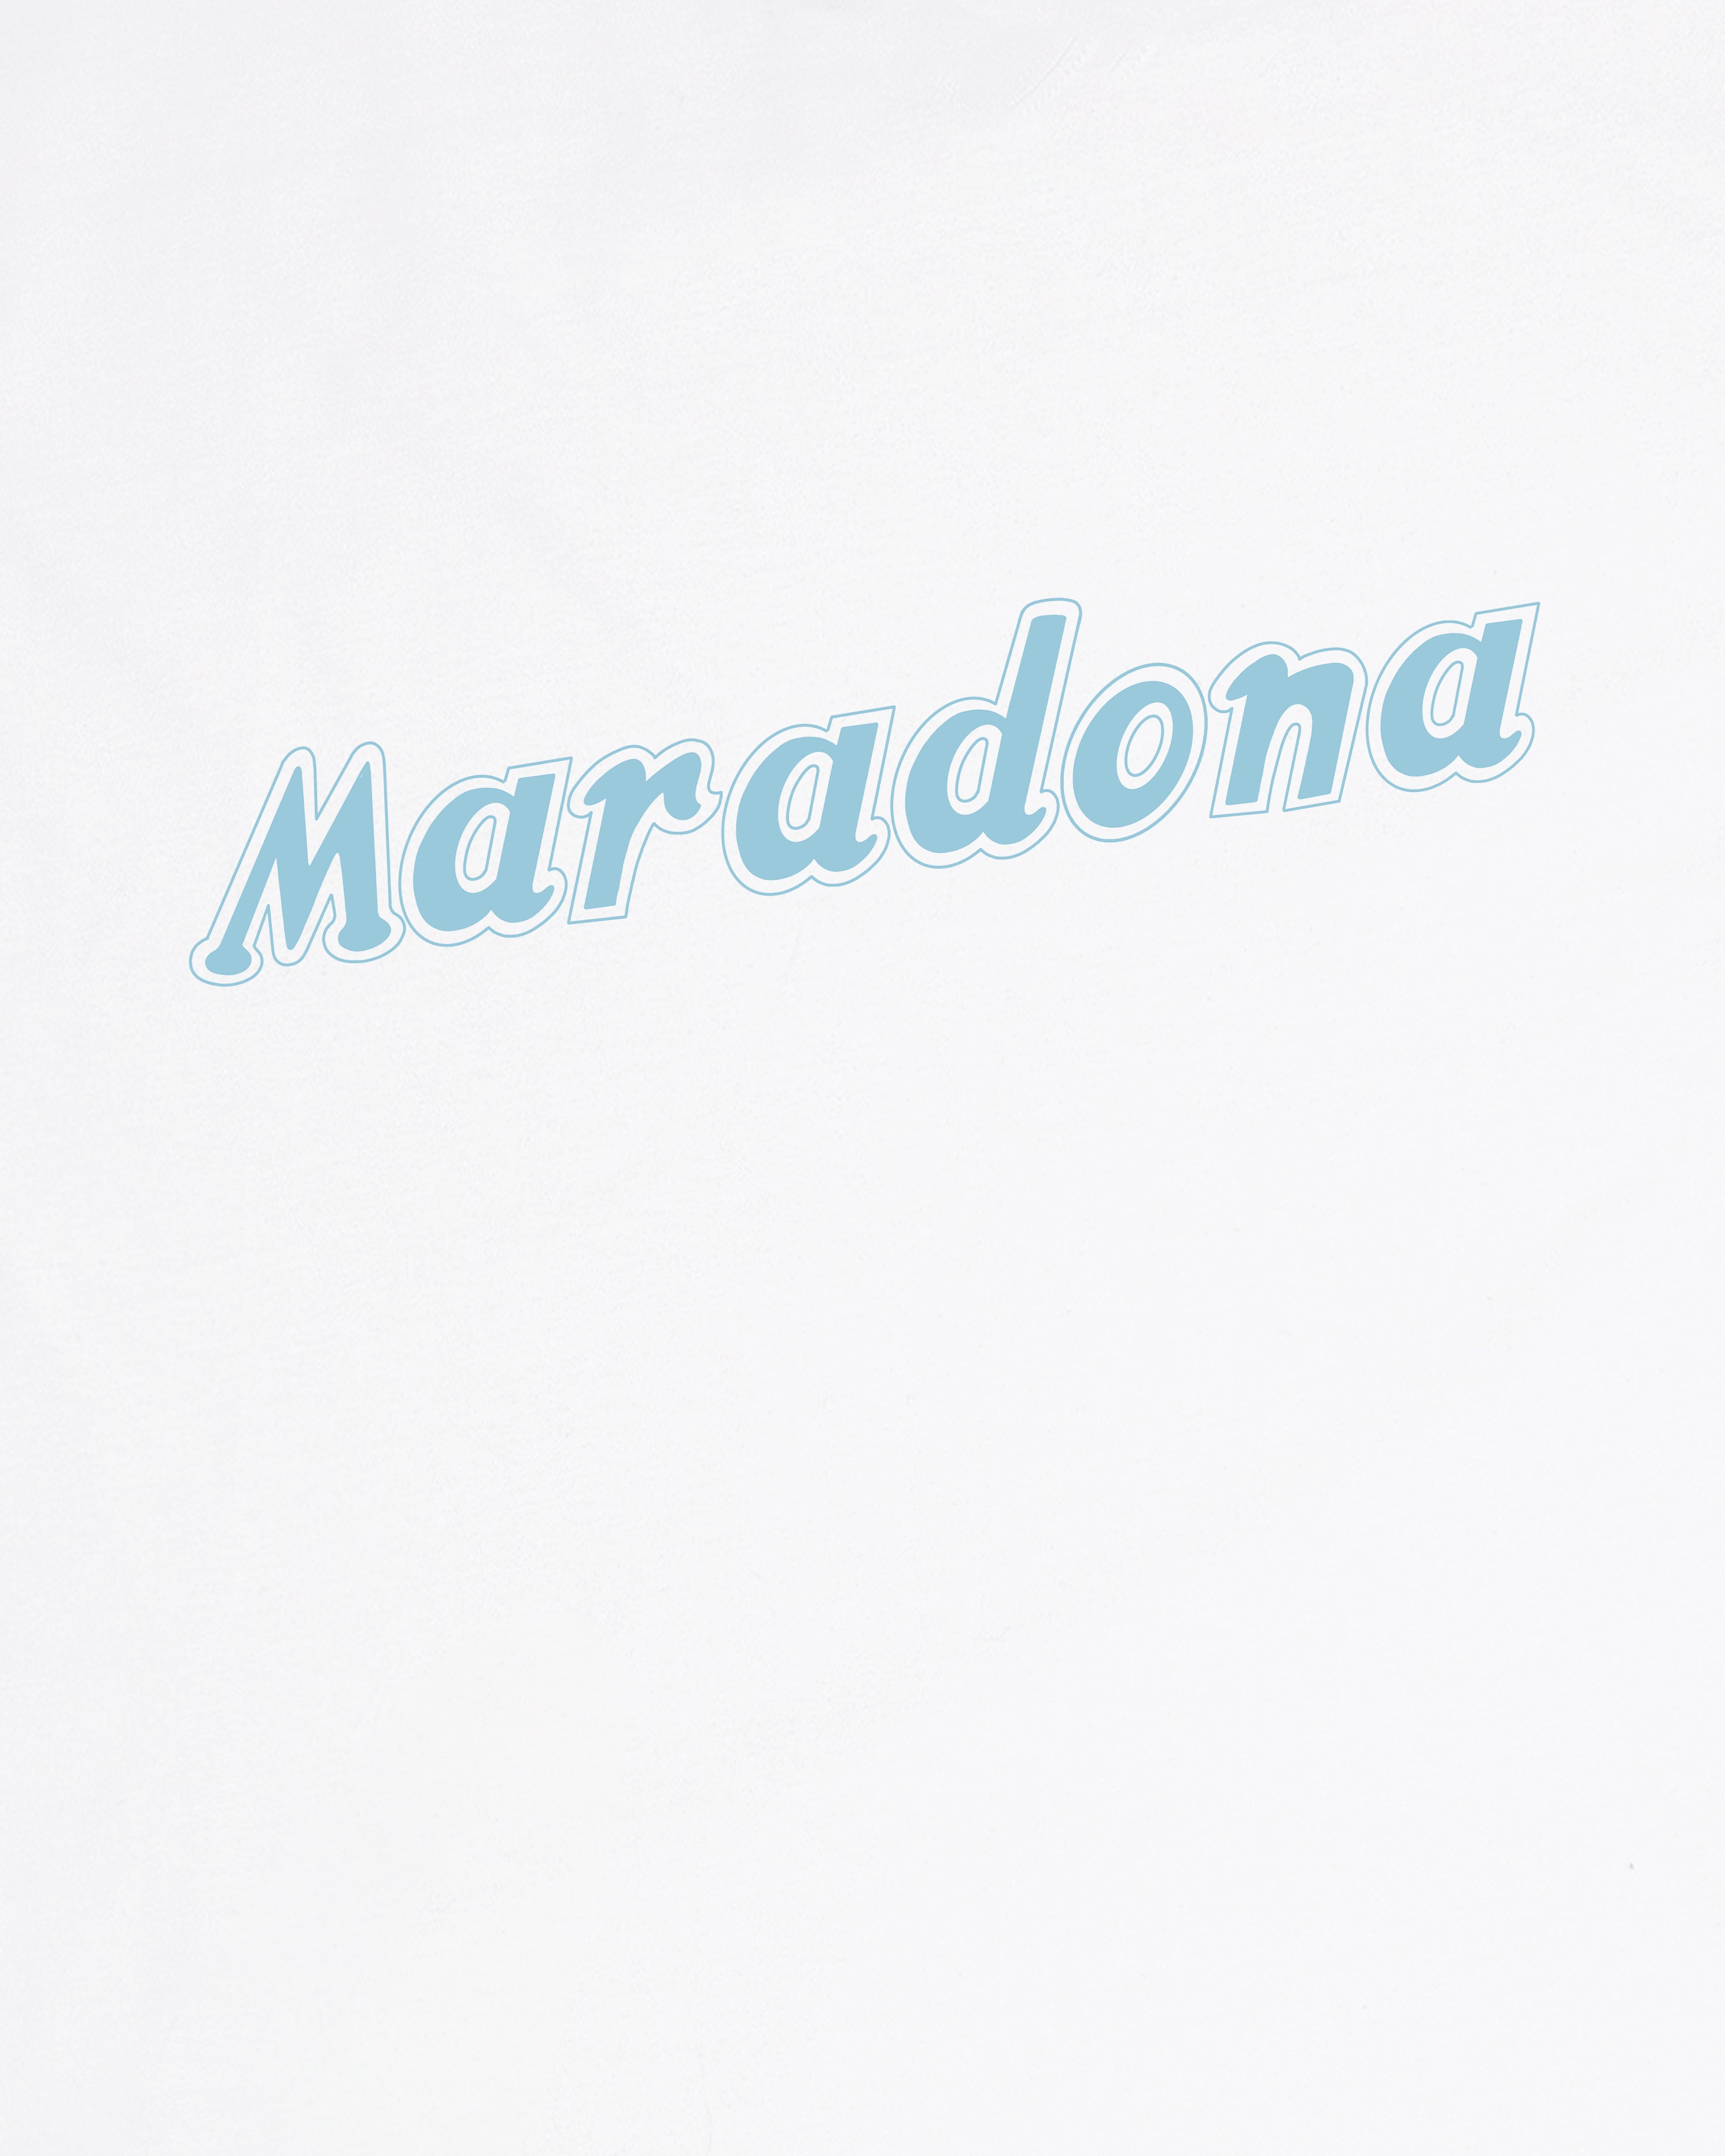 Bootleg Maradona - Tee or Sweat